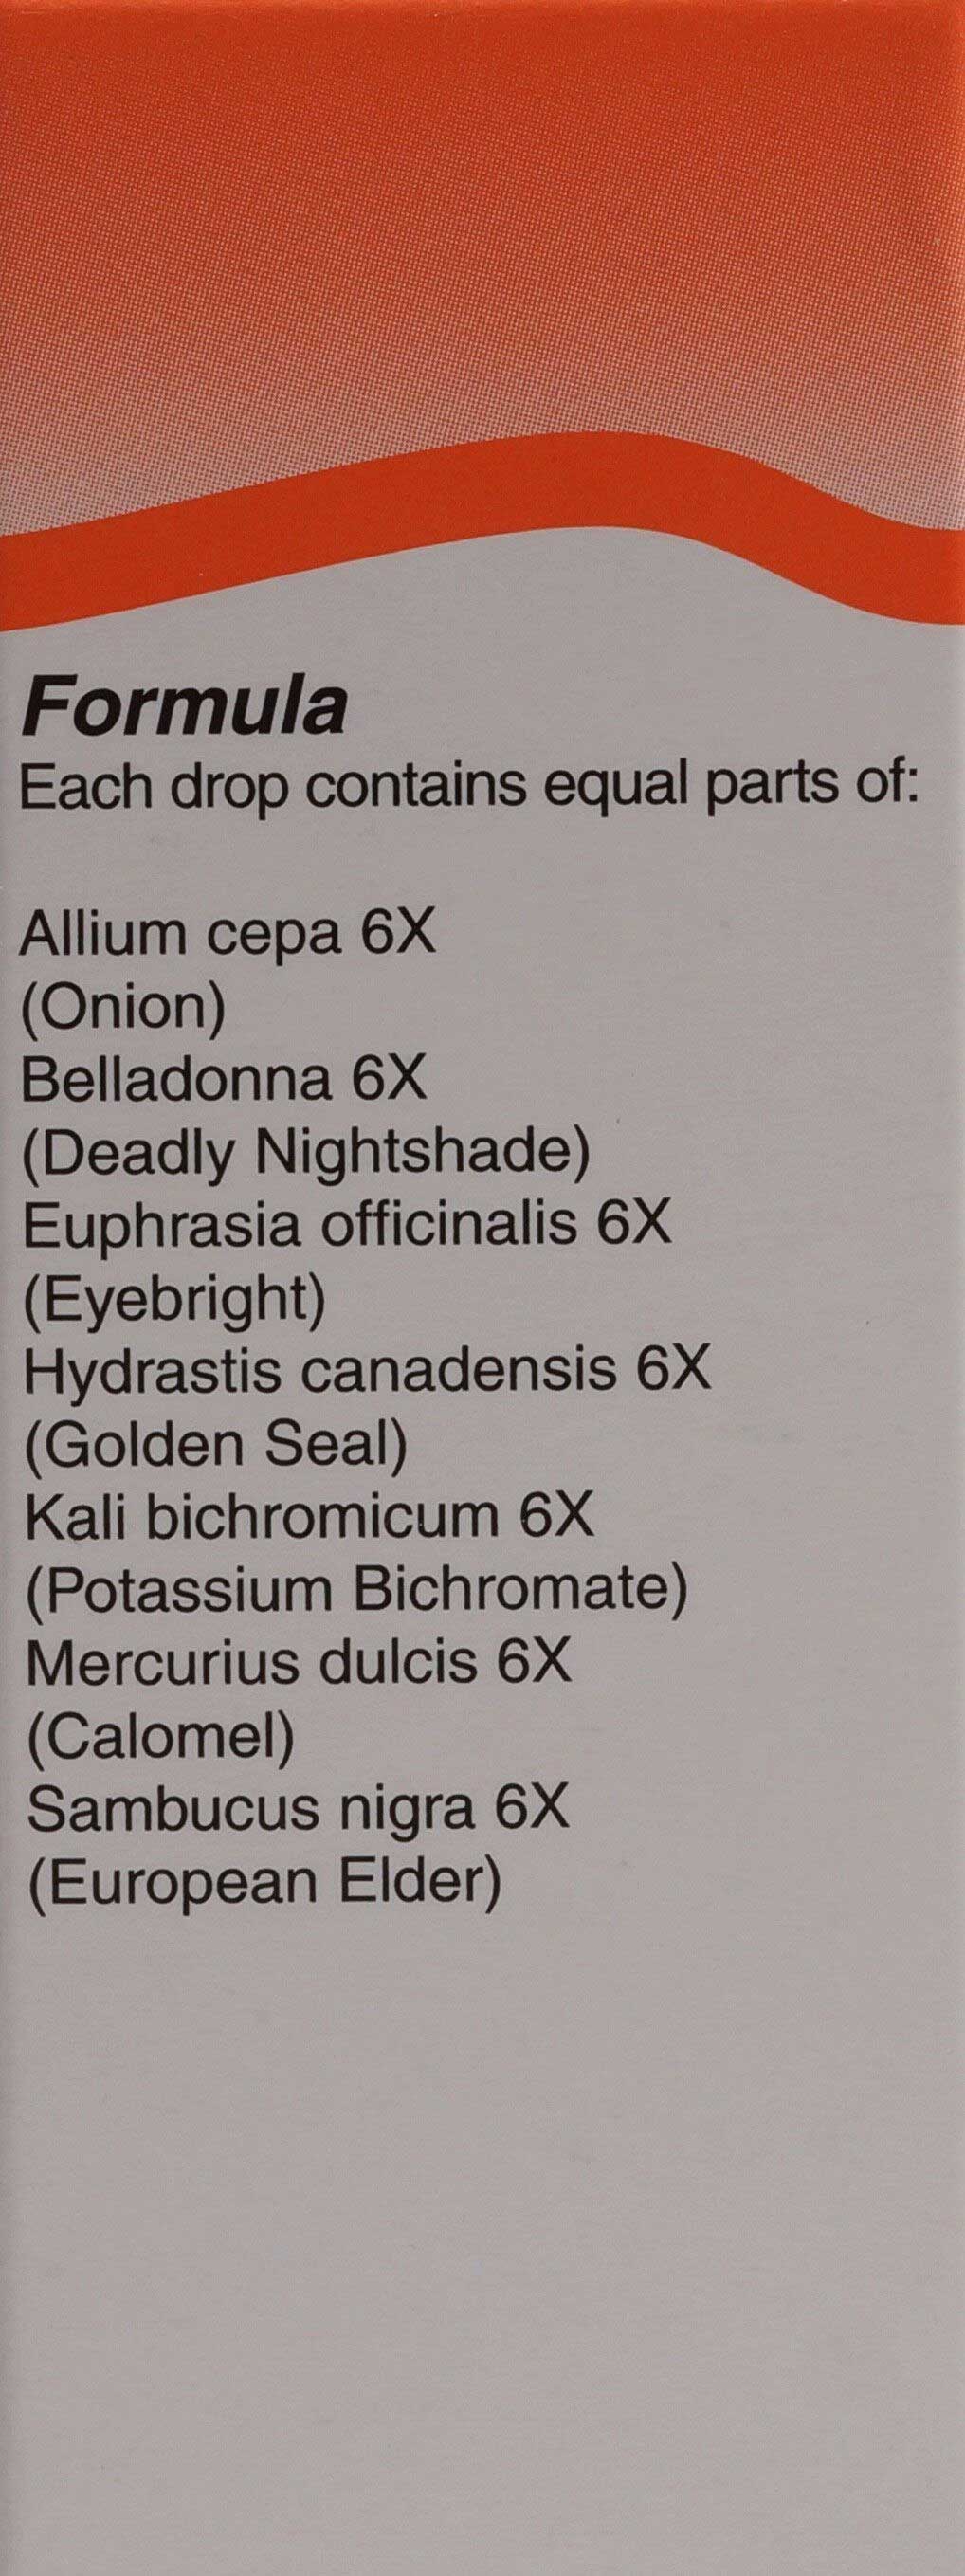 UNDA Allium Cepa Plex Ingredients